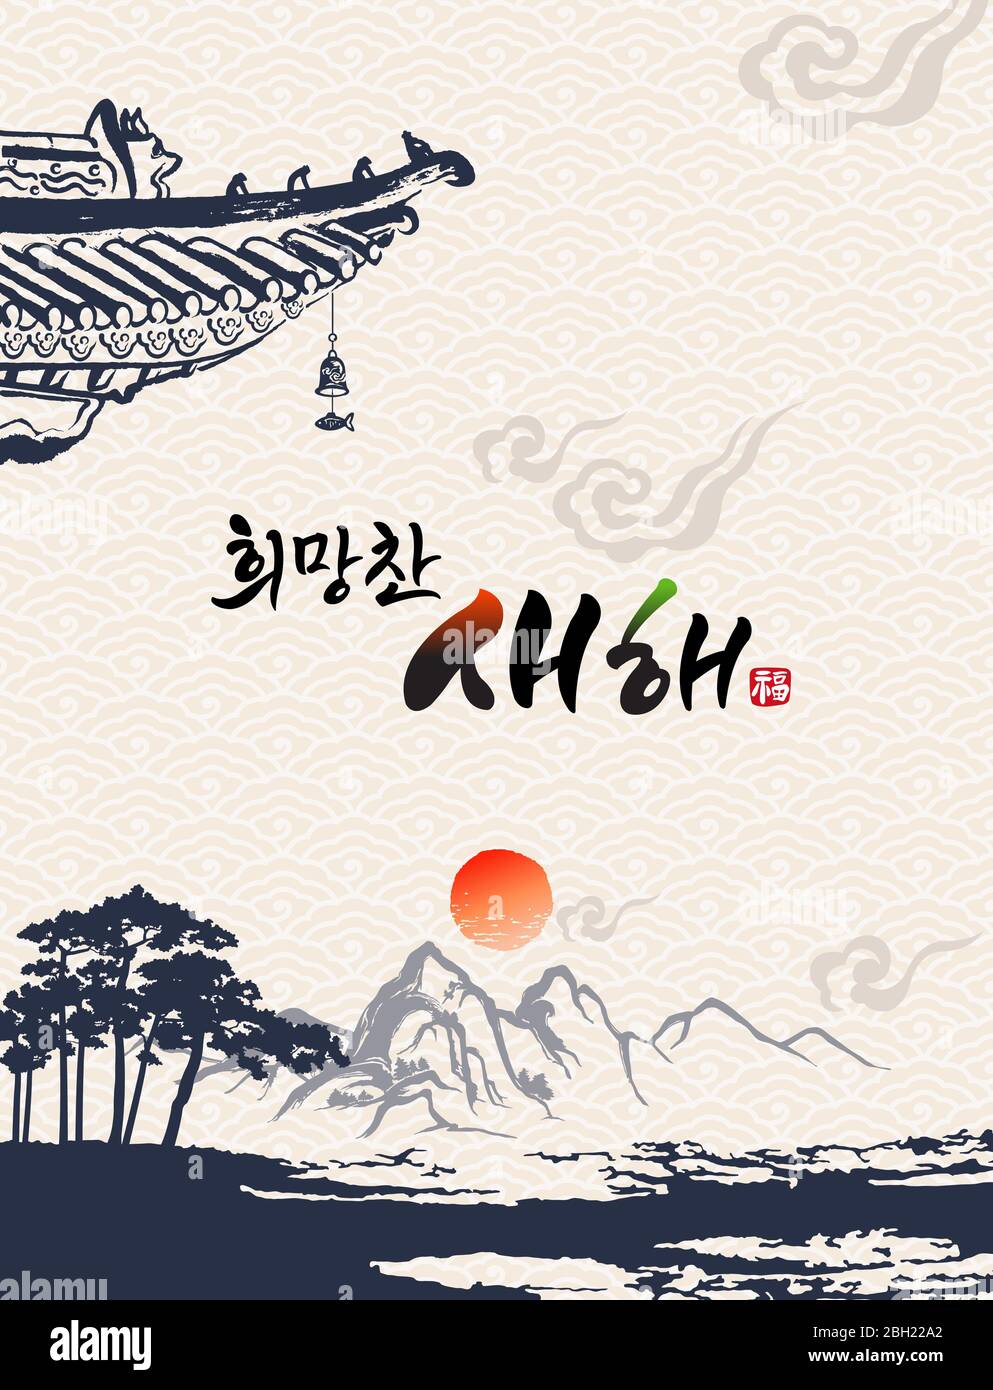 Frohes neues Jahr, Übersetzung des koreanischen Textes: Frohes neues Jahr Kalligraphie und koreanische traditionelle koreanische Malerei Vektor-Illustration. Stock Vektor